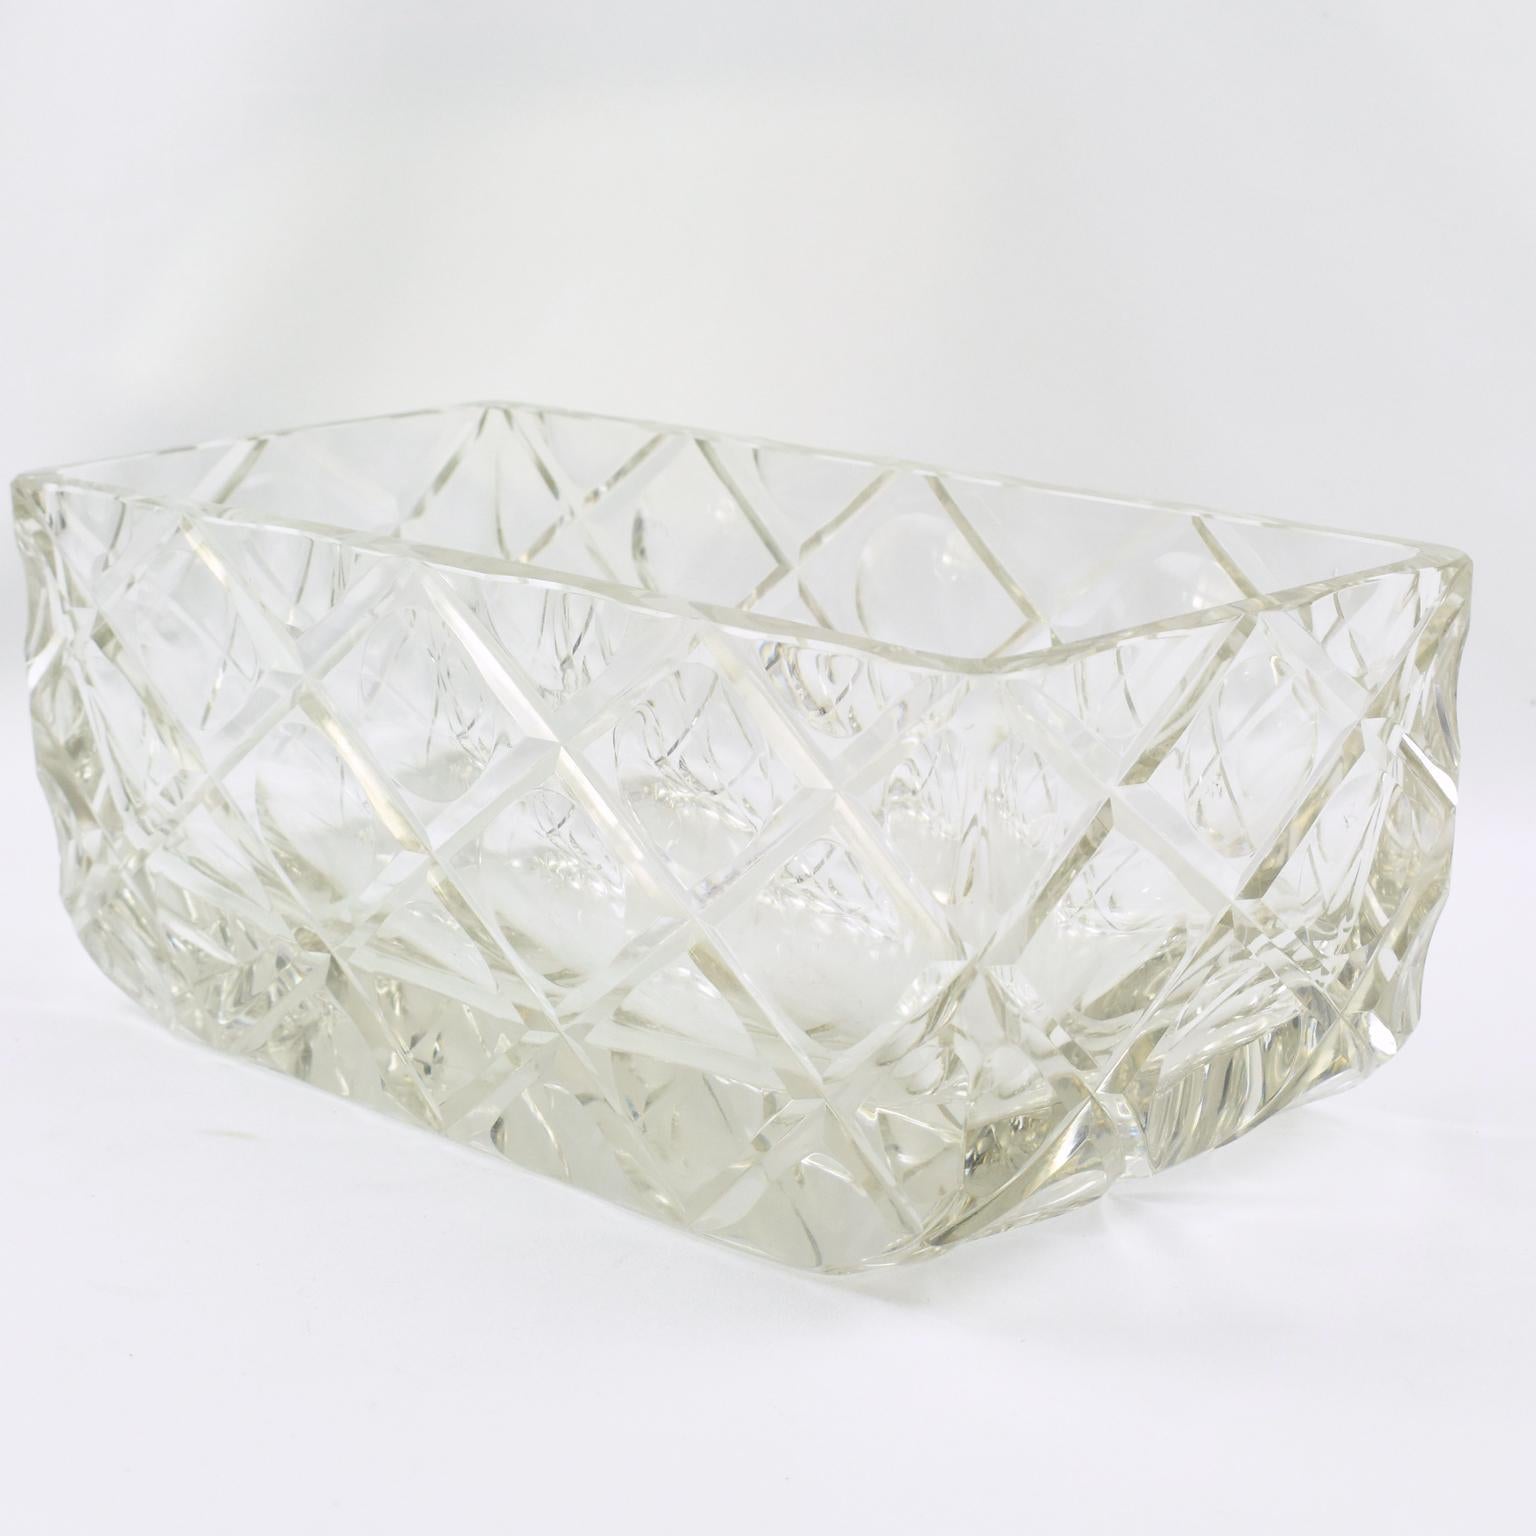 Cet impressionnant centre de table sculptural en cristal Art déco, ou bol décoratif, a été fabriqué à la main en France dans les années 1930. La forme rectangulaire moderne et aérodynamique est ornée d'une gravure géométrique profonde. Cette pièce